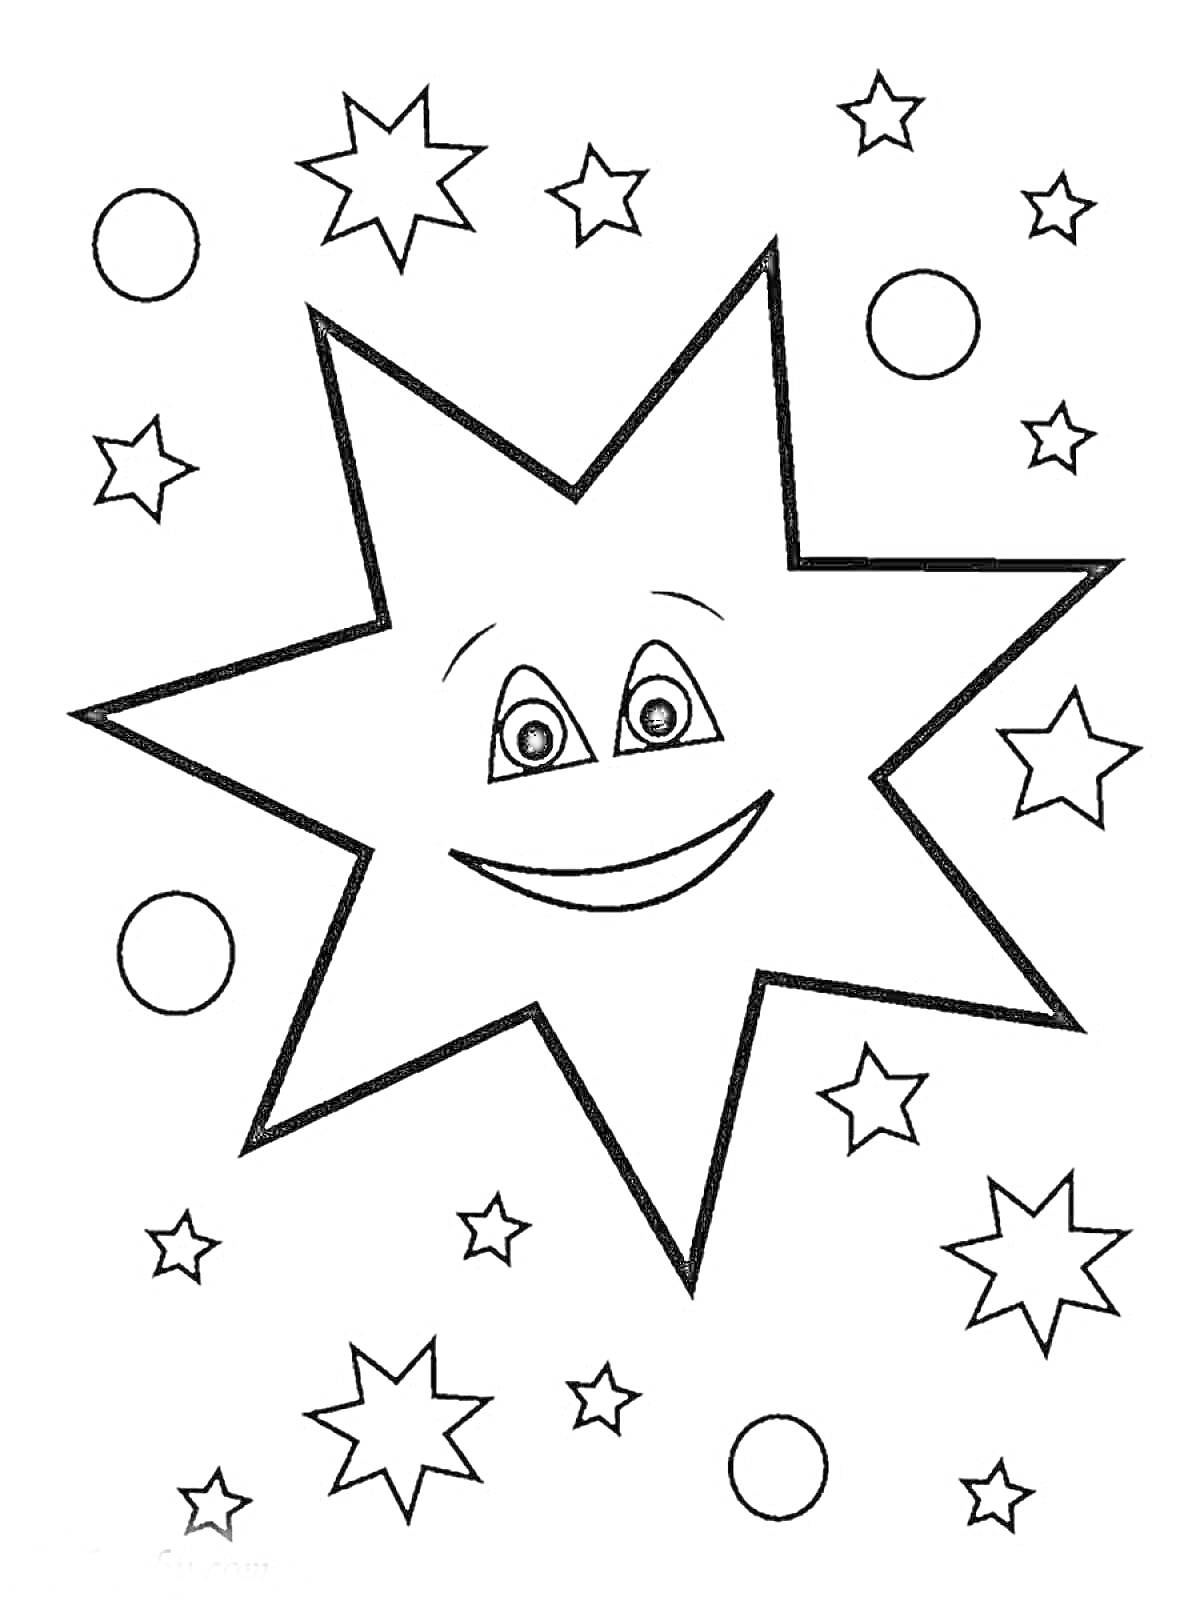 Большая улыбающаяся звезда и маленькие звезды и круги на фоне звездного неба